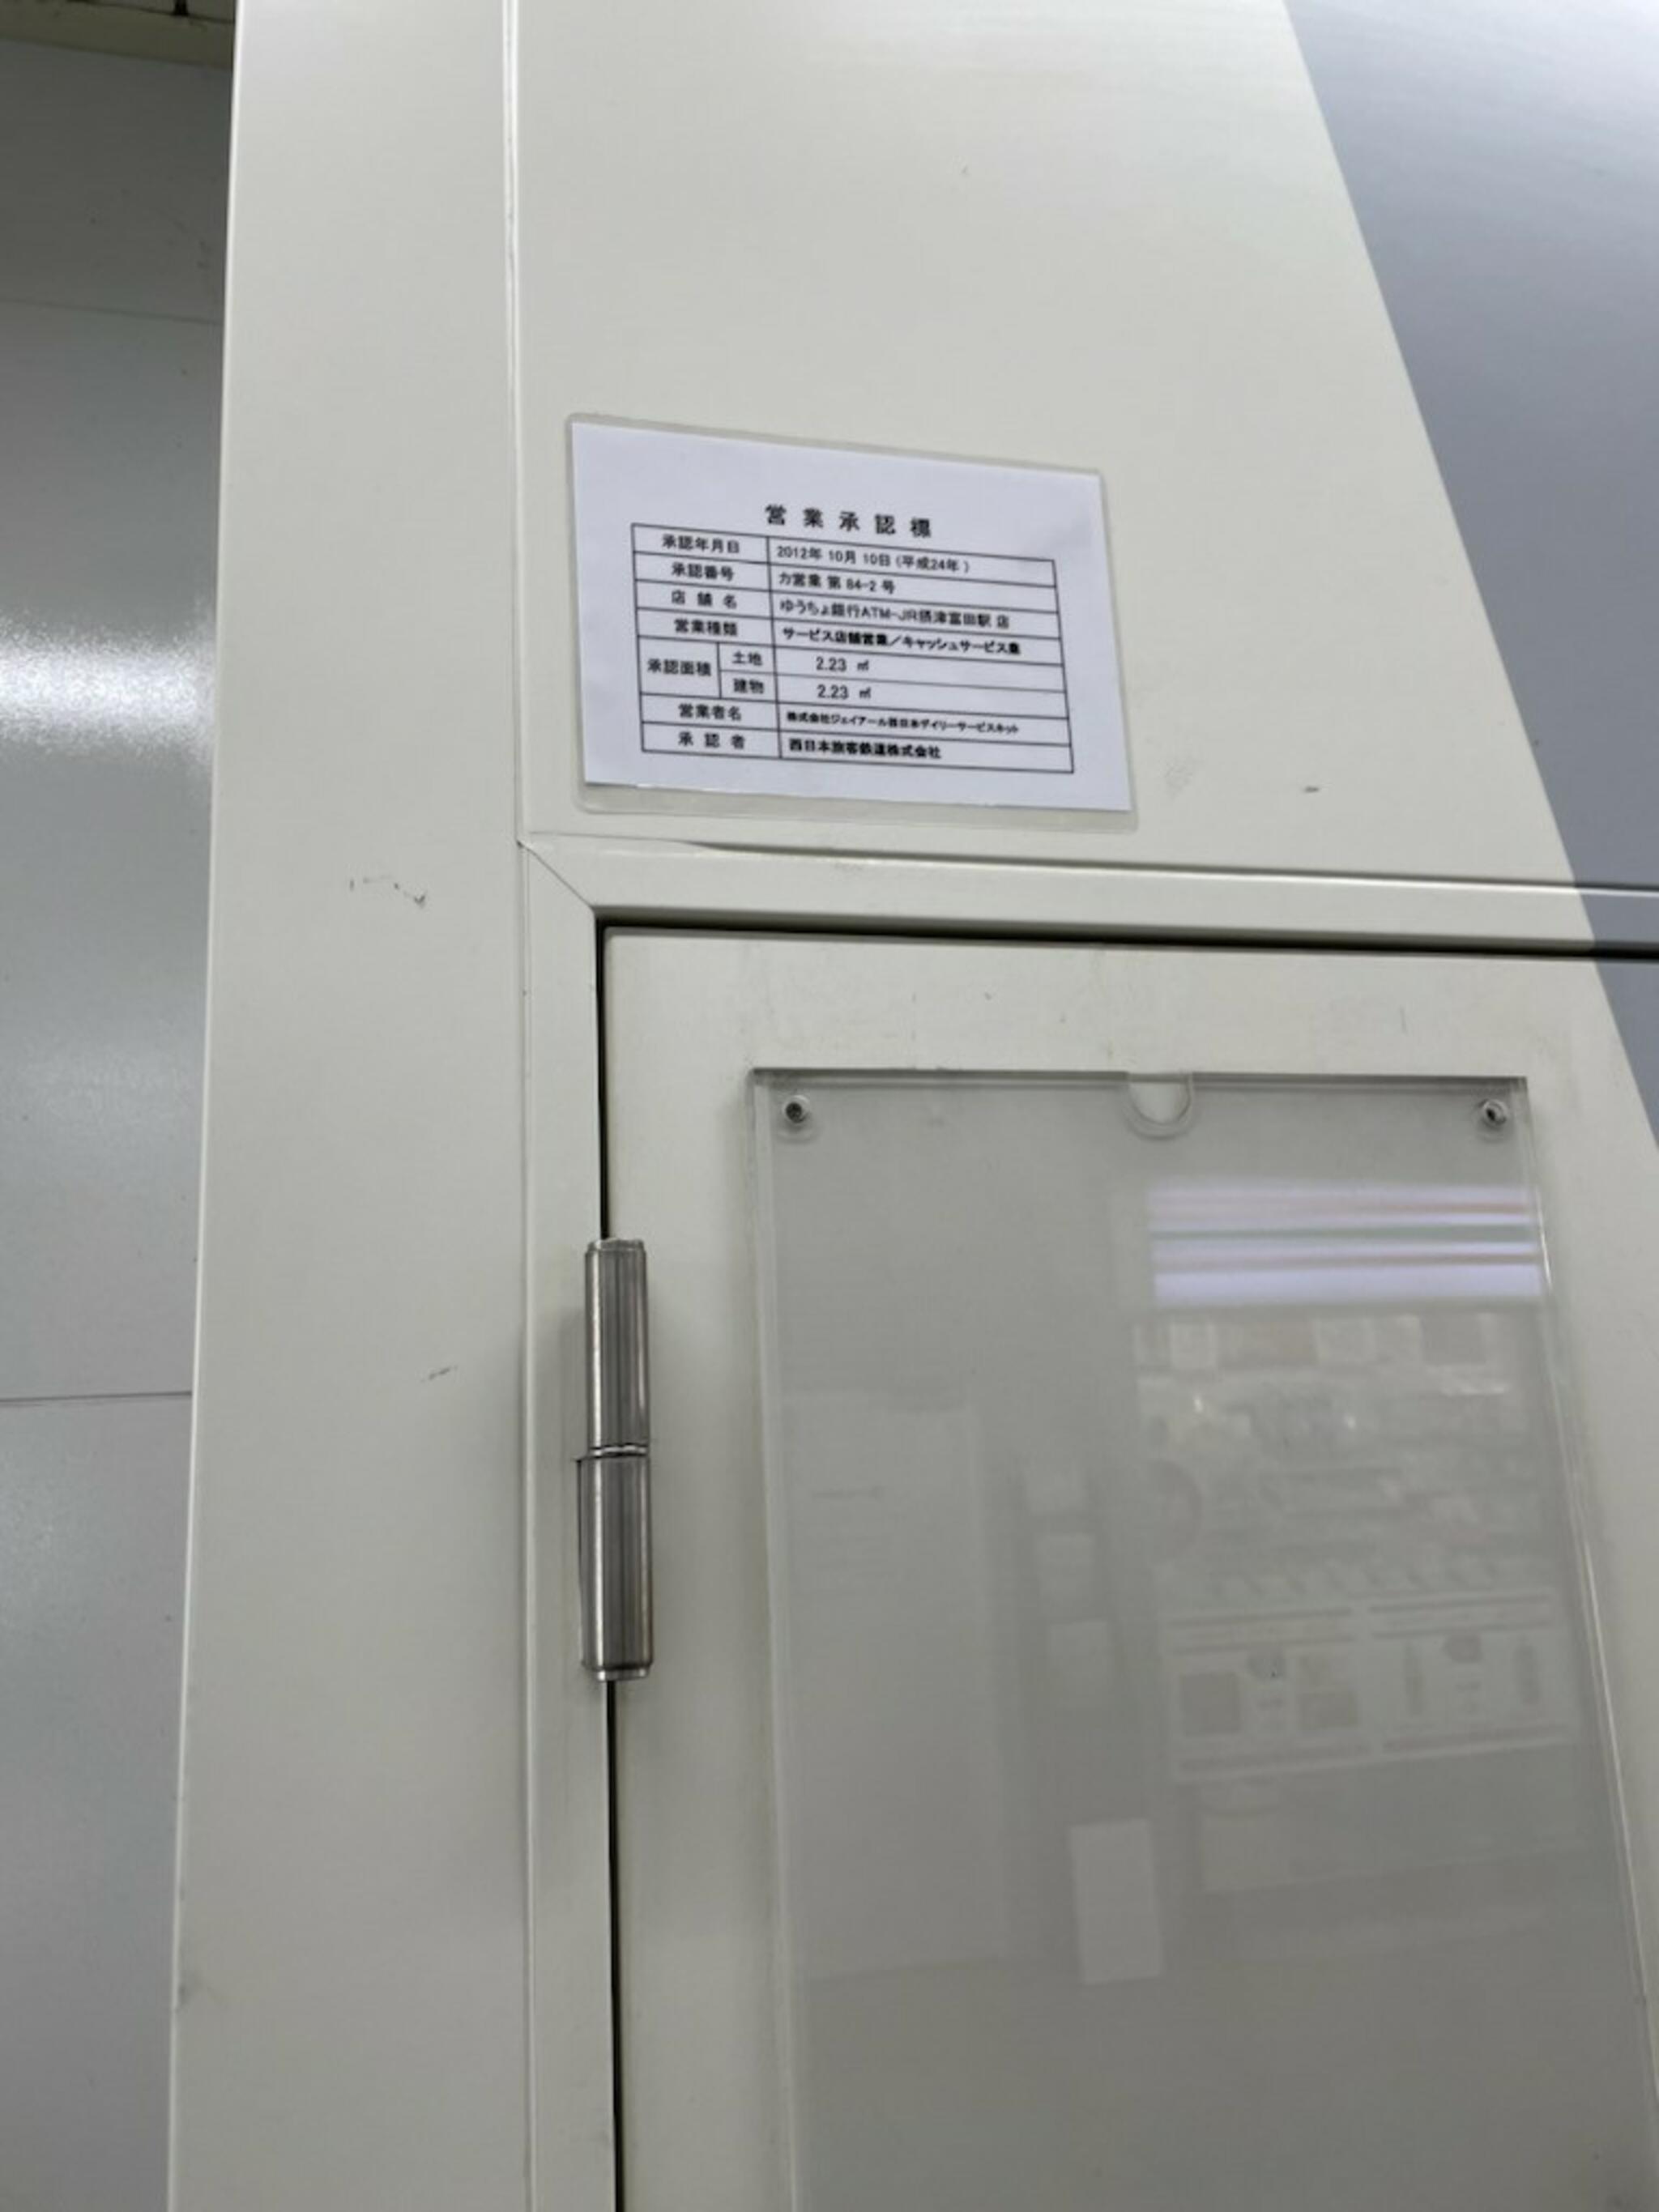 ゆうちょ銀行 ATM JR摂津富田駅内出張所の代表写真3